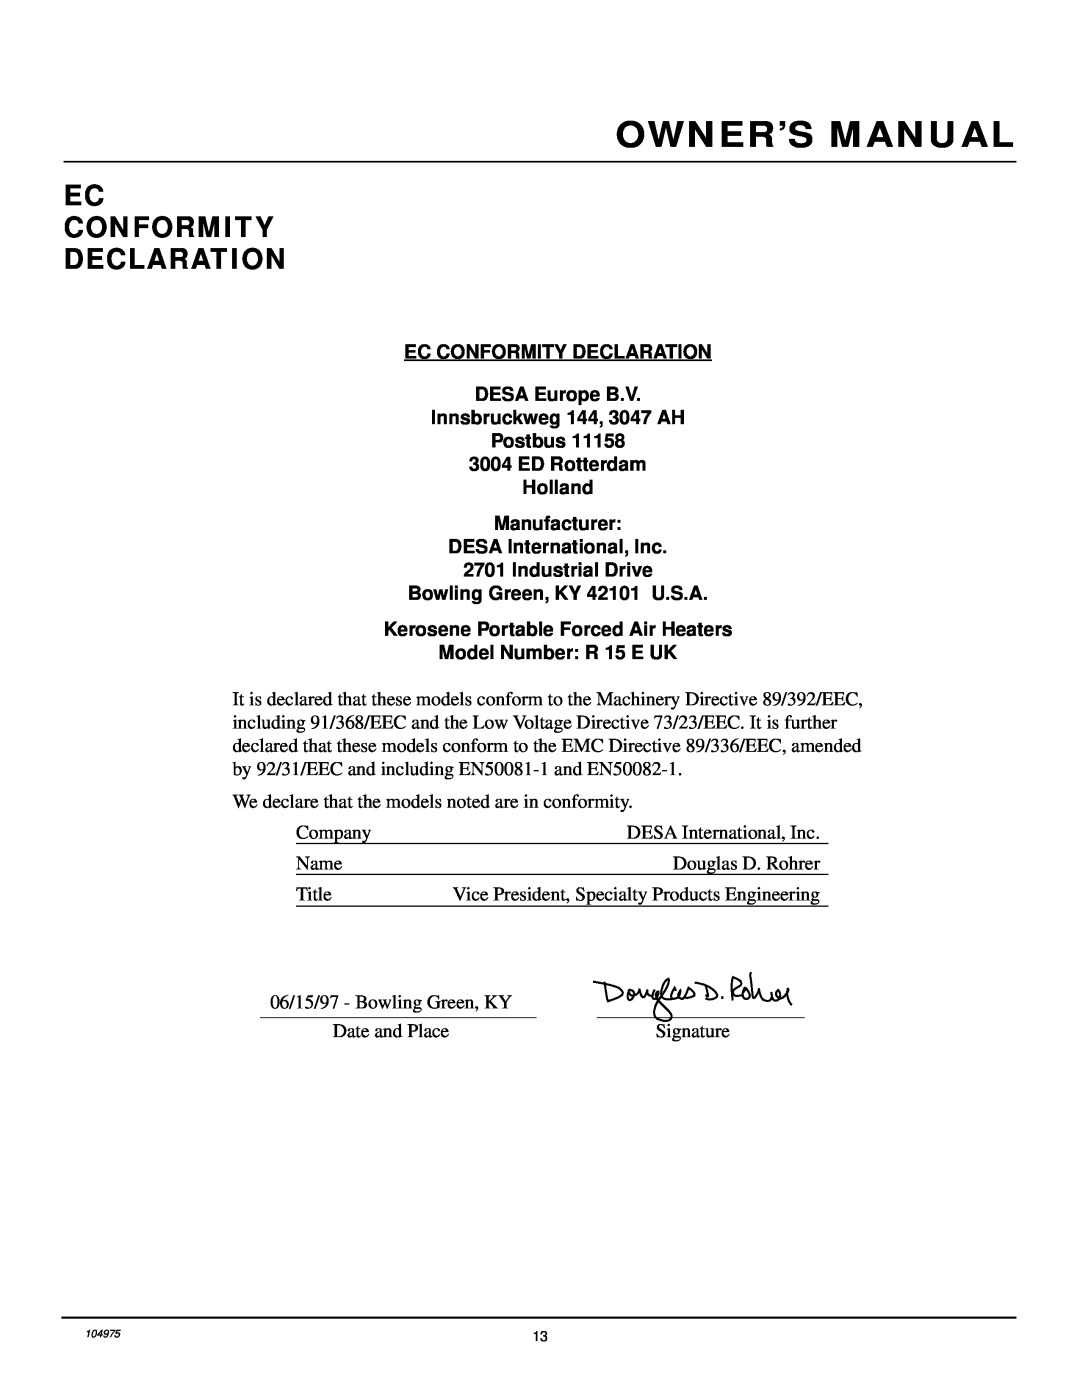 Desa R 15 E UK owner manual Ec Conformity Declaration 